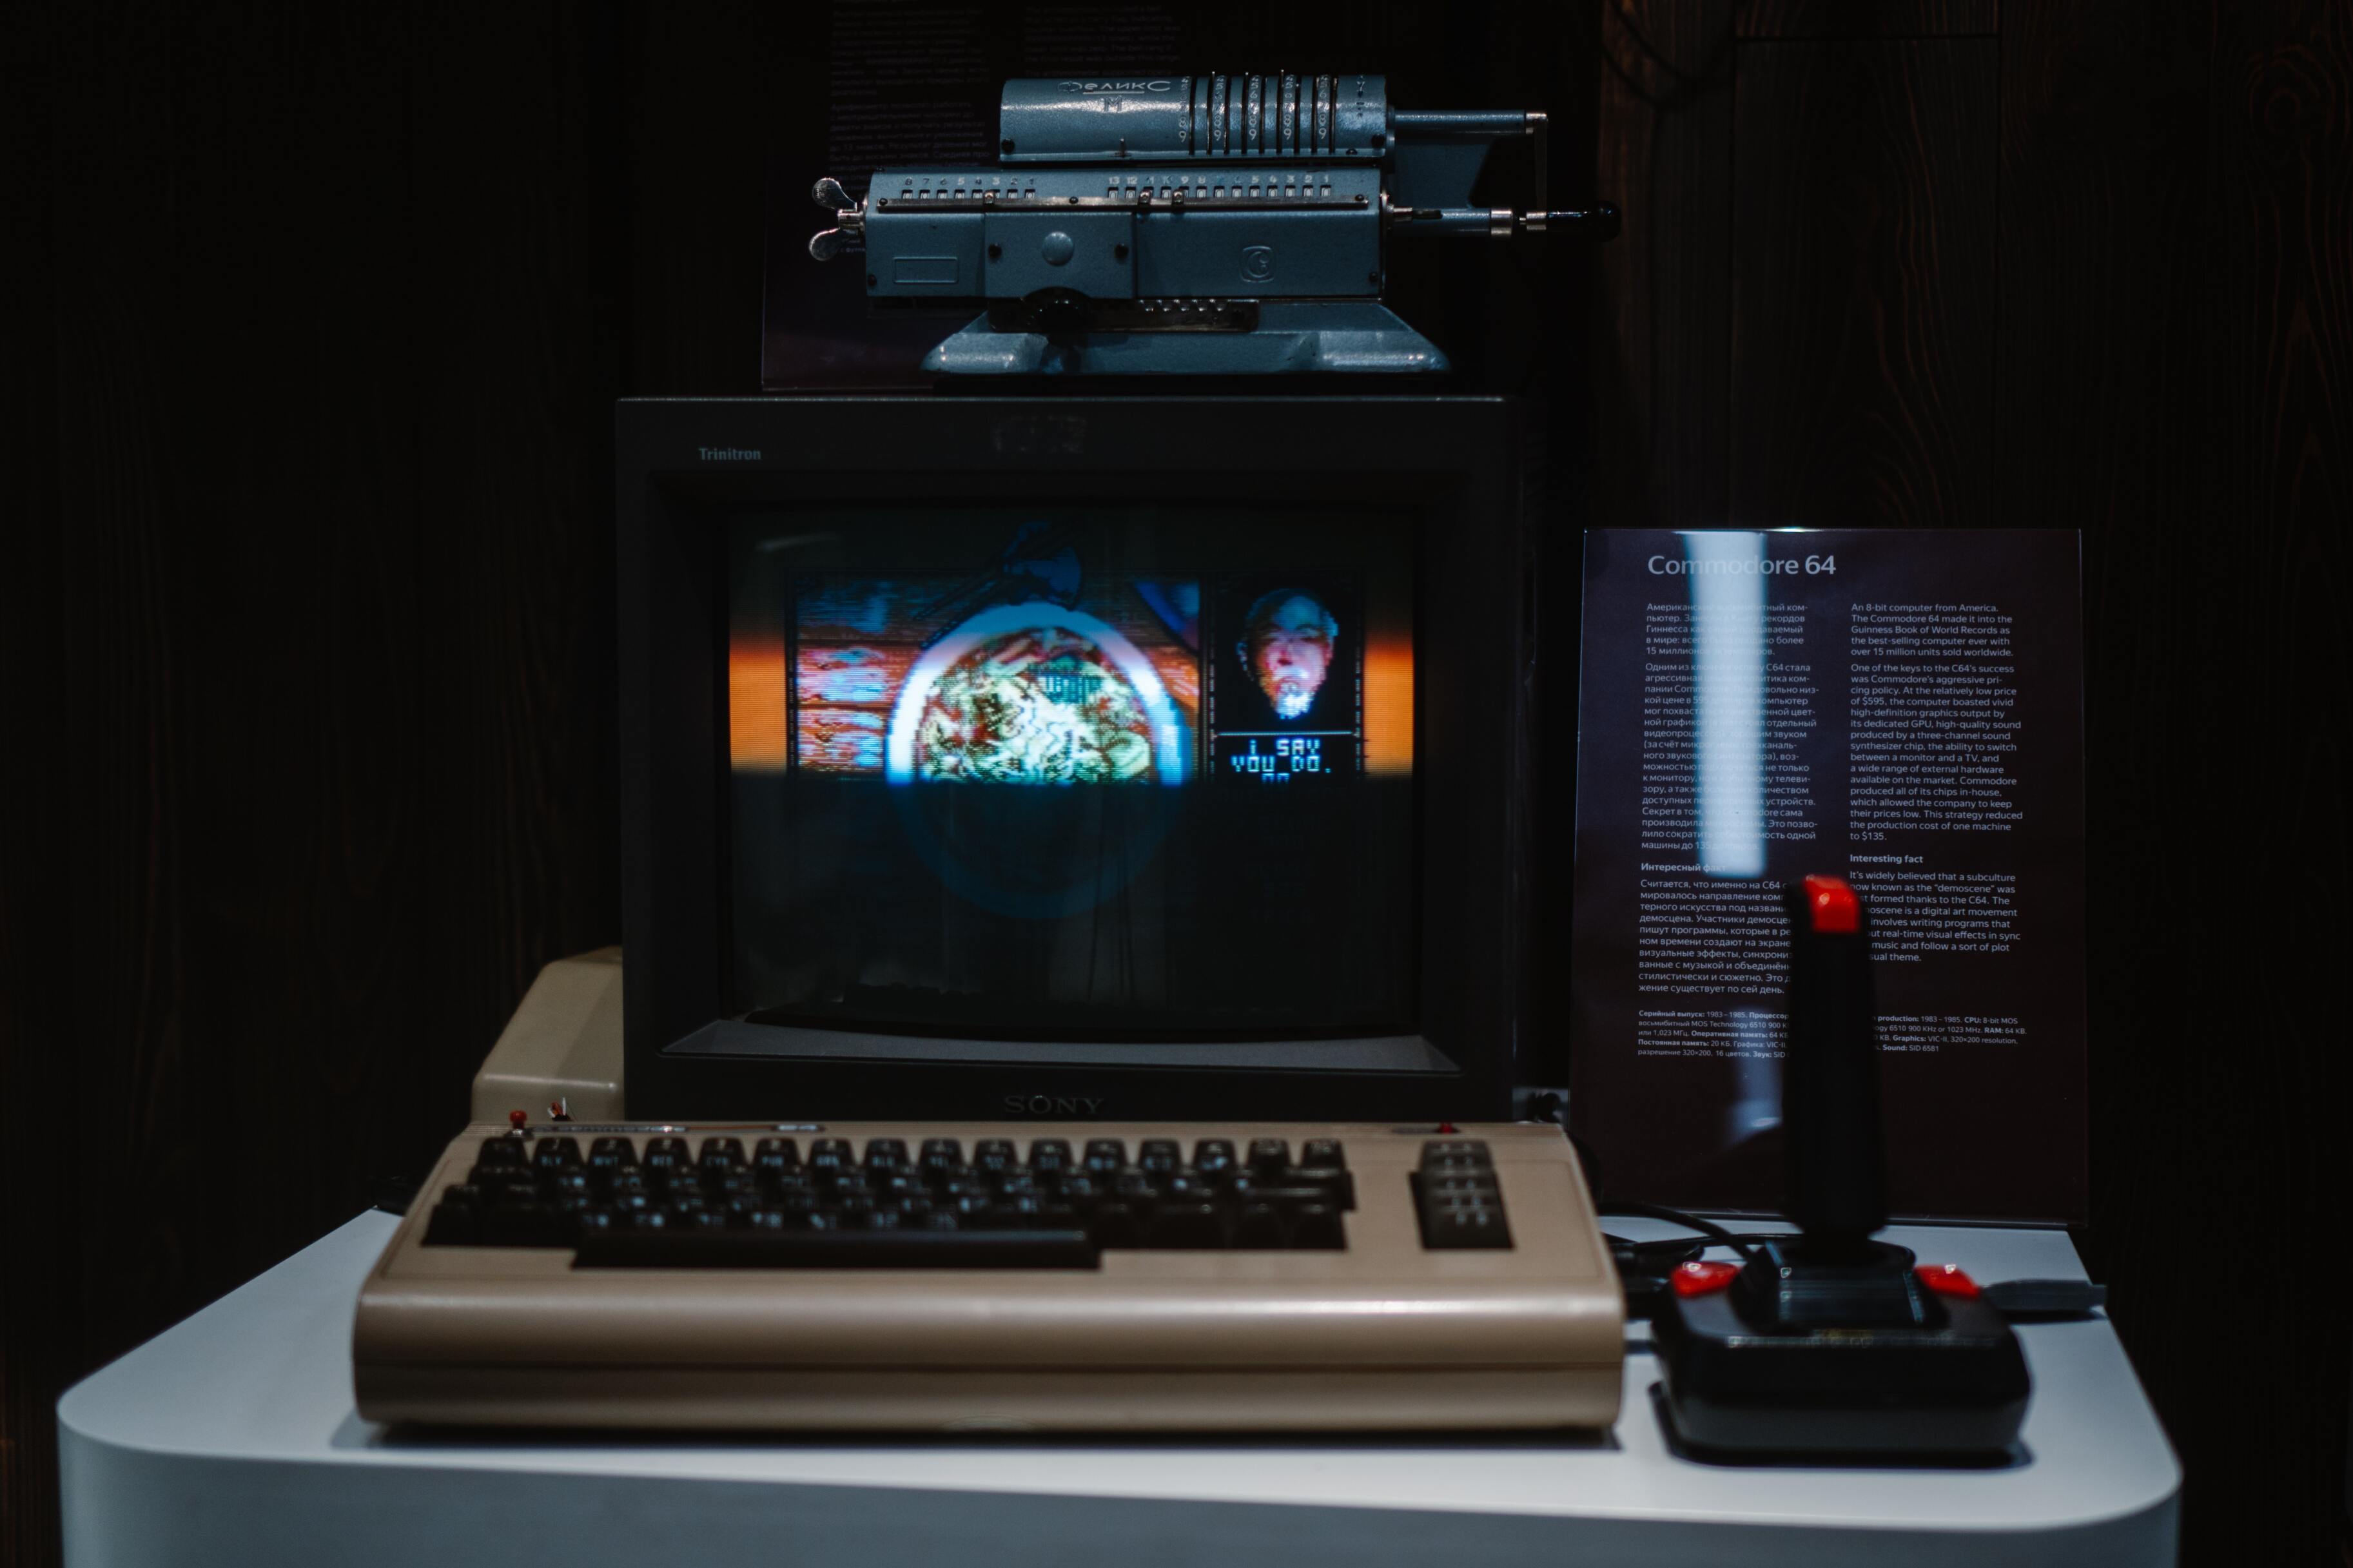  -     Commodore 64